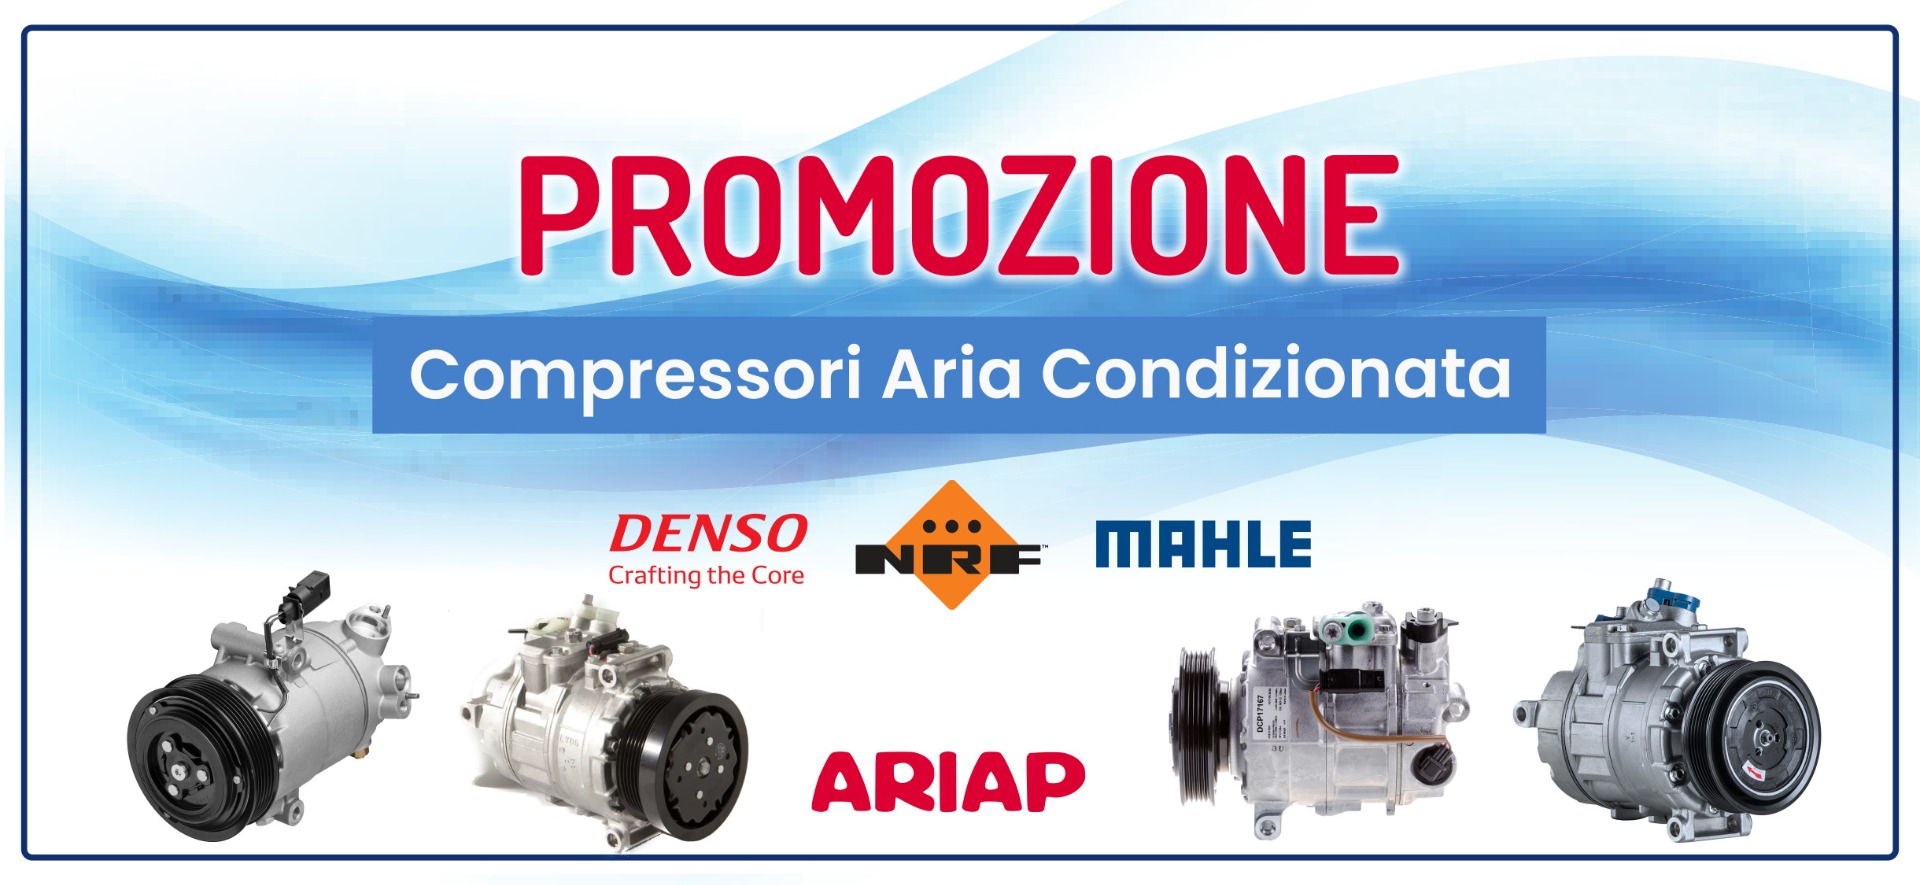 ARIAP Promozione compressori A/C Denso, Mahle e NRF